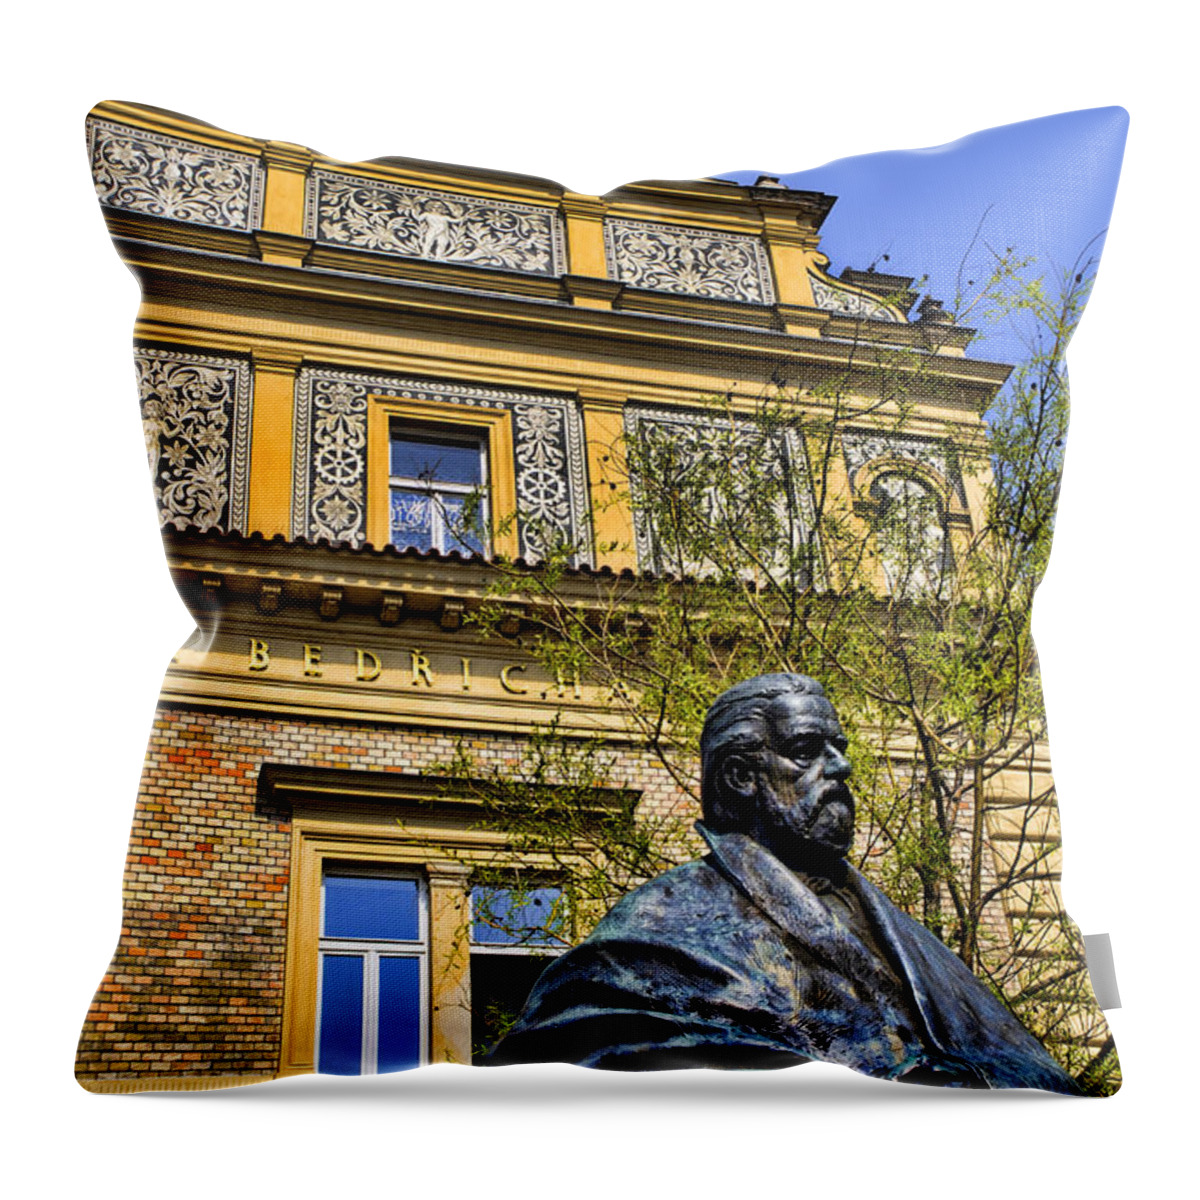 Prague Throw Pillow featuring the photograph Master of Czech Music by Brenda Kean